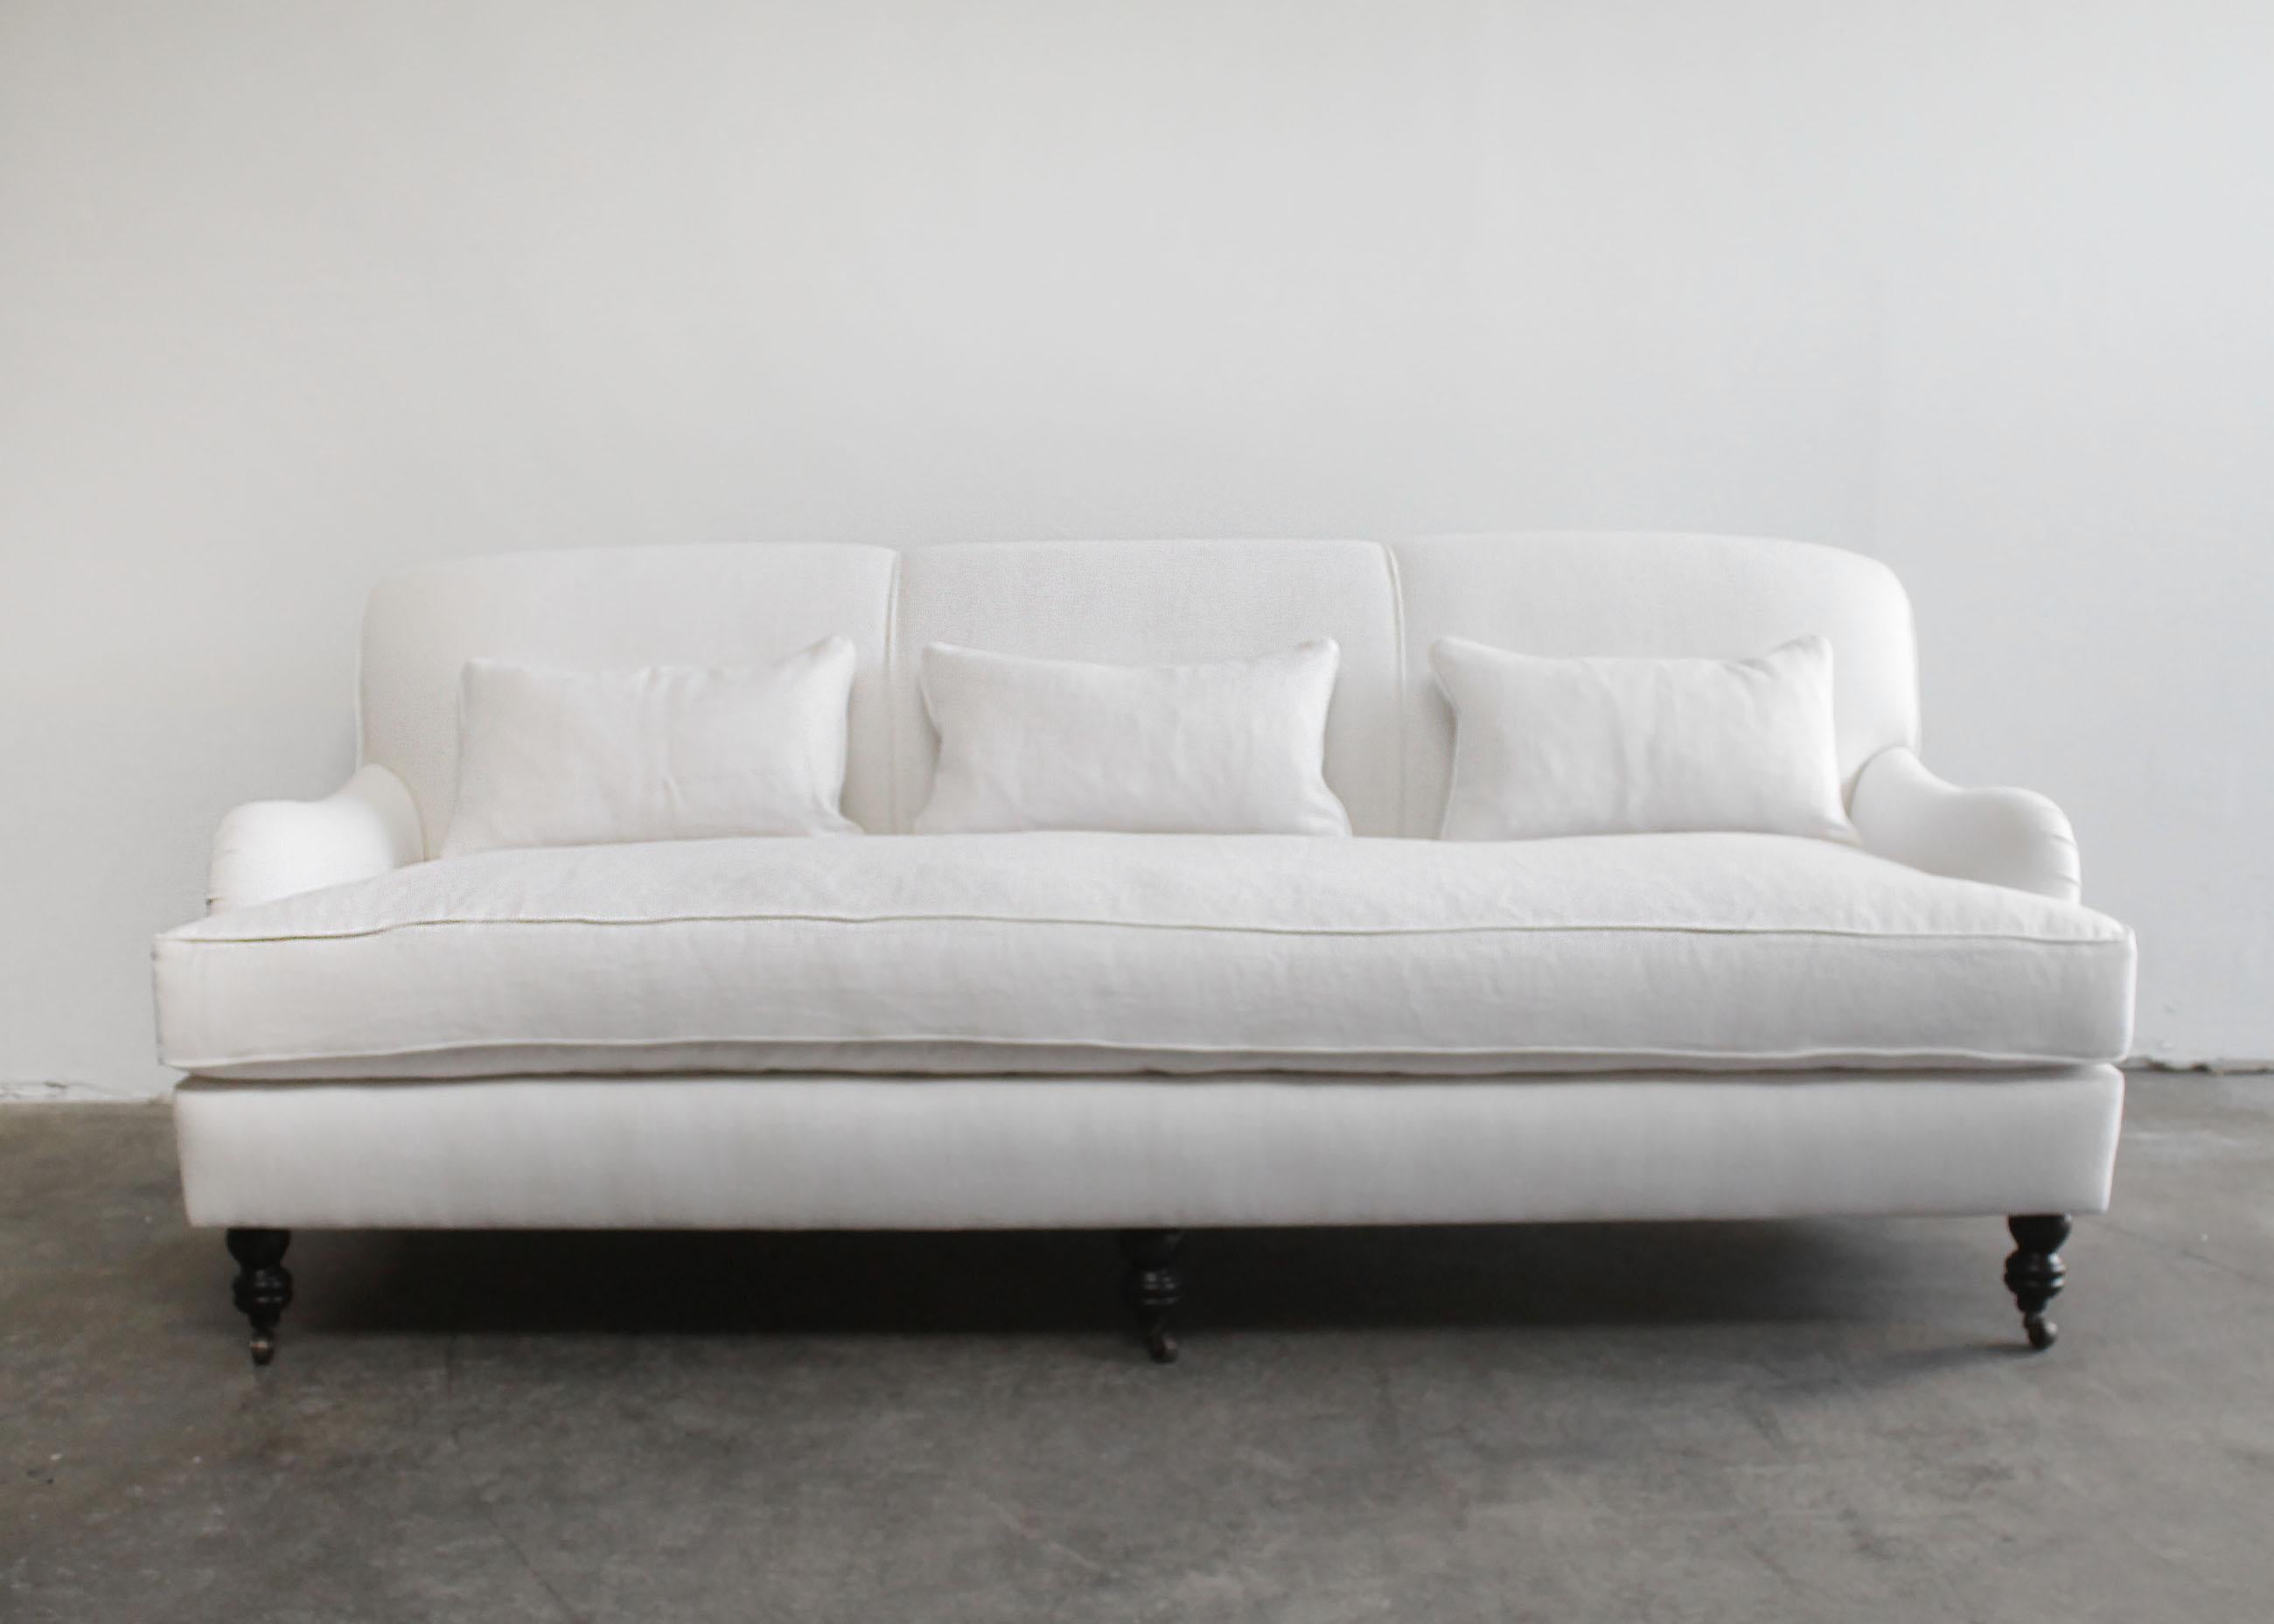 Englisches Sofa mit gerollter Rückenlehne und Rollen aus weißem Leinen.
Nach Maß gefertigt, mit schwerem belgischem Leinen gepolstert, mit Daunenfedersitzen.
Sehr bequemes Sitzen mit einem Sitz aus Schaumstoff mittlerer Dichte, umhüllt von einem